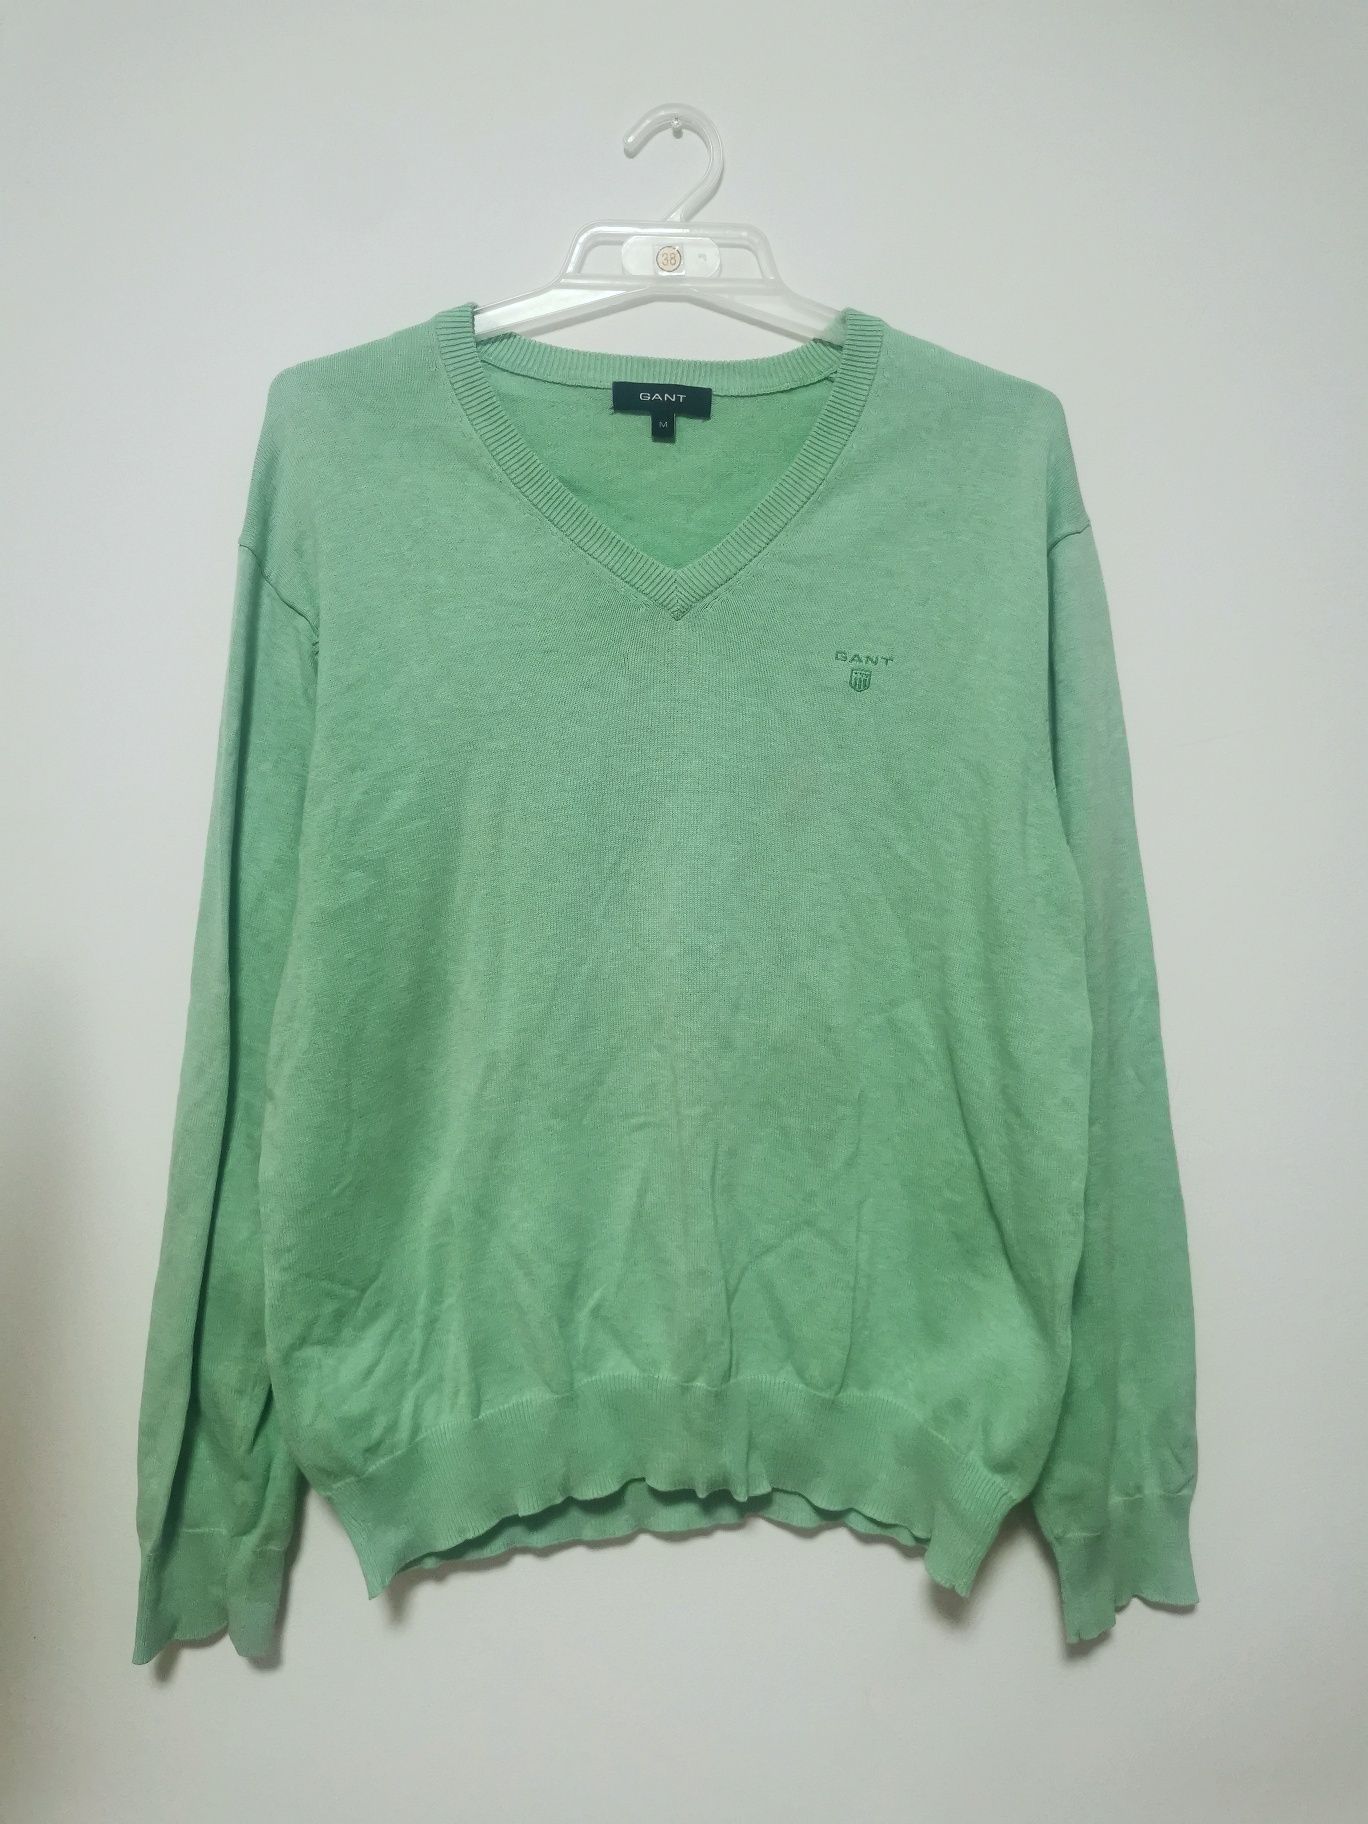 Zielony sweter GANT, bawełniany sweterek wiosenny, miętowy, cienki